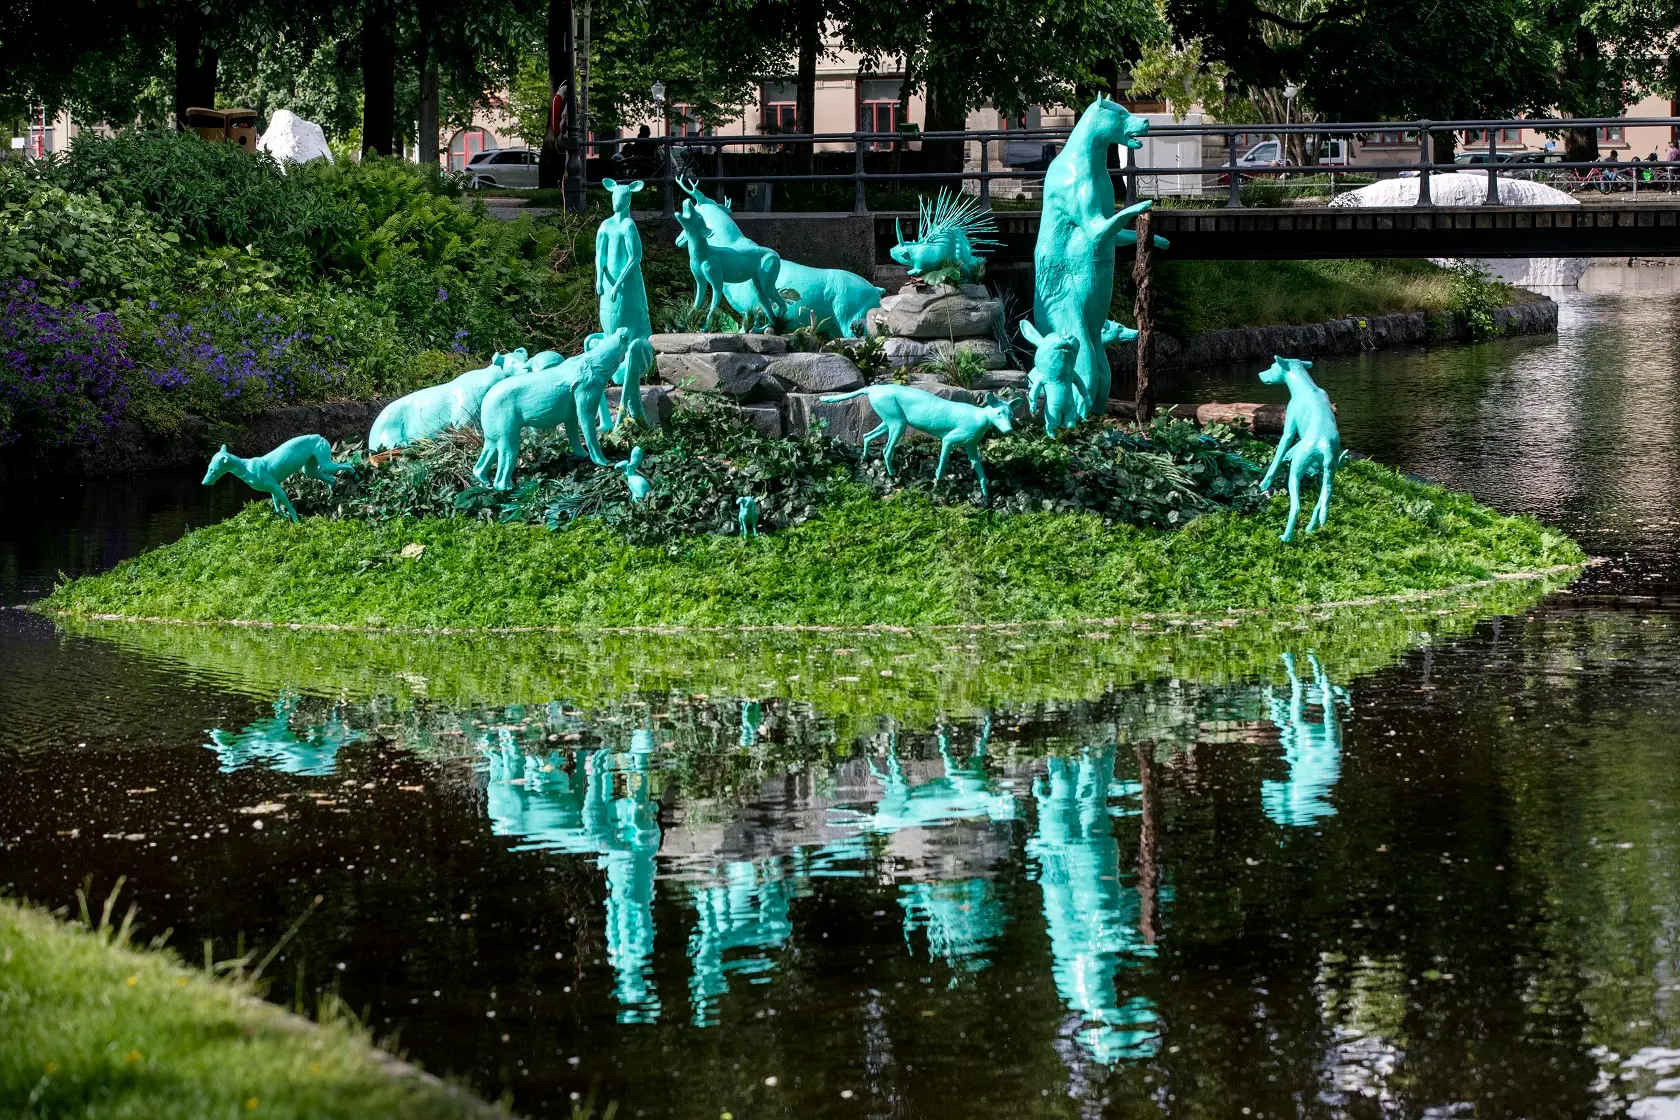 På vattnet flyter en grön ö. Ön består av gräs och på gräset står 15 olika vilda djur skulpturer som är målade i grönt. Ön och djuren reflekteras i vattnet.